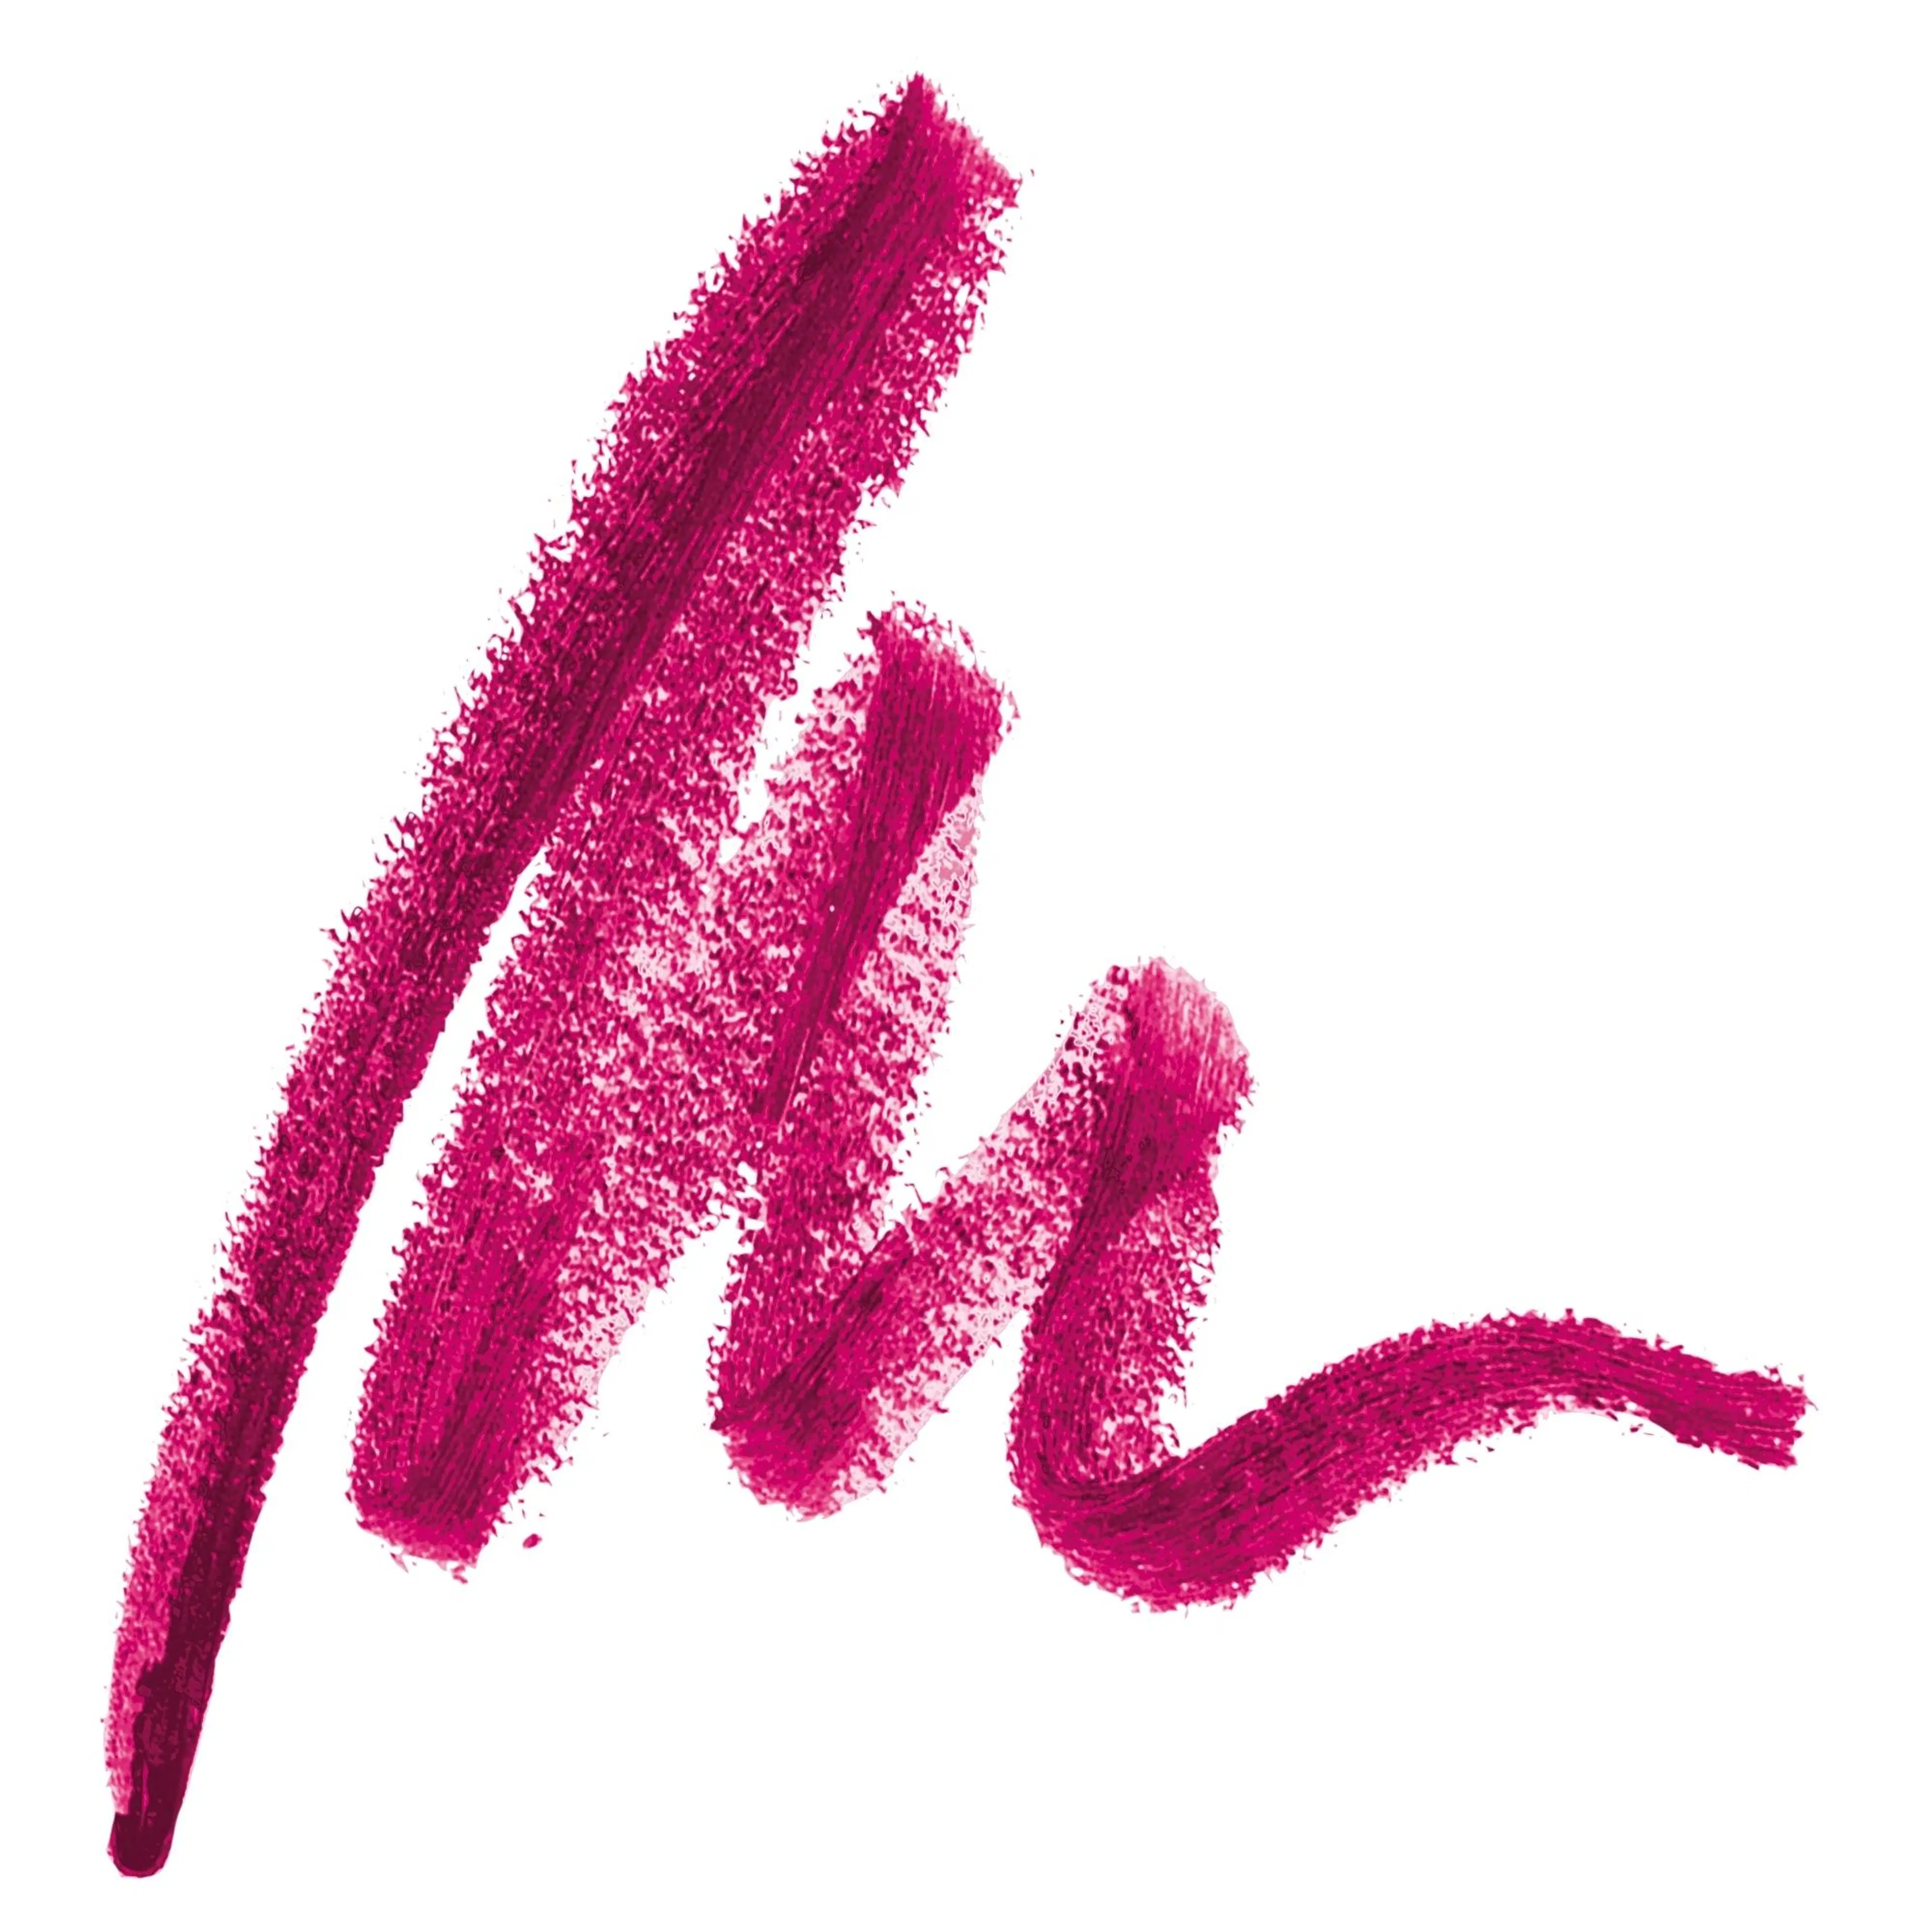 Max Factor Colour Elixir Lip Liner 40 Pink Kiss 1g huultenrajauskynä